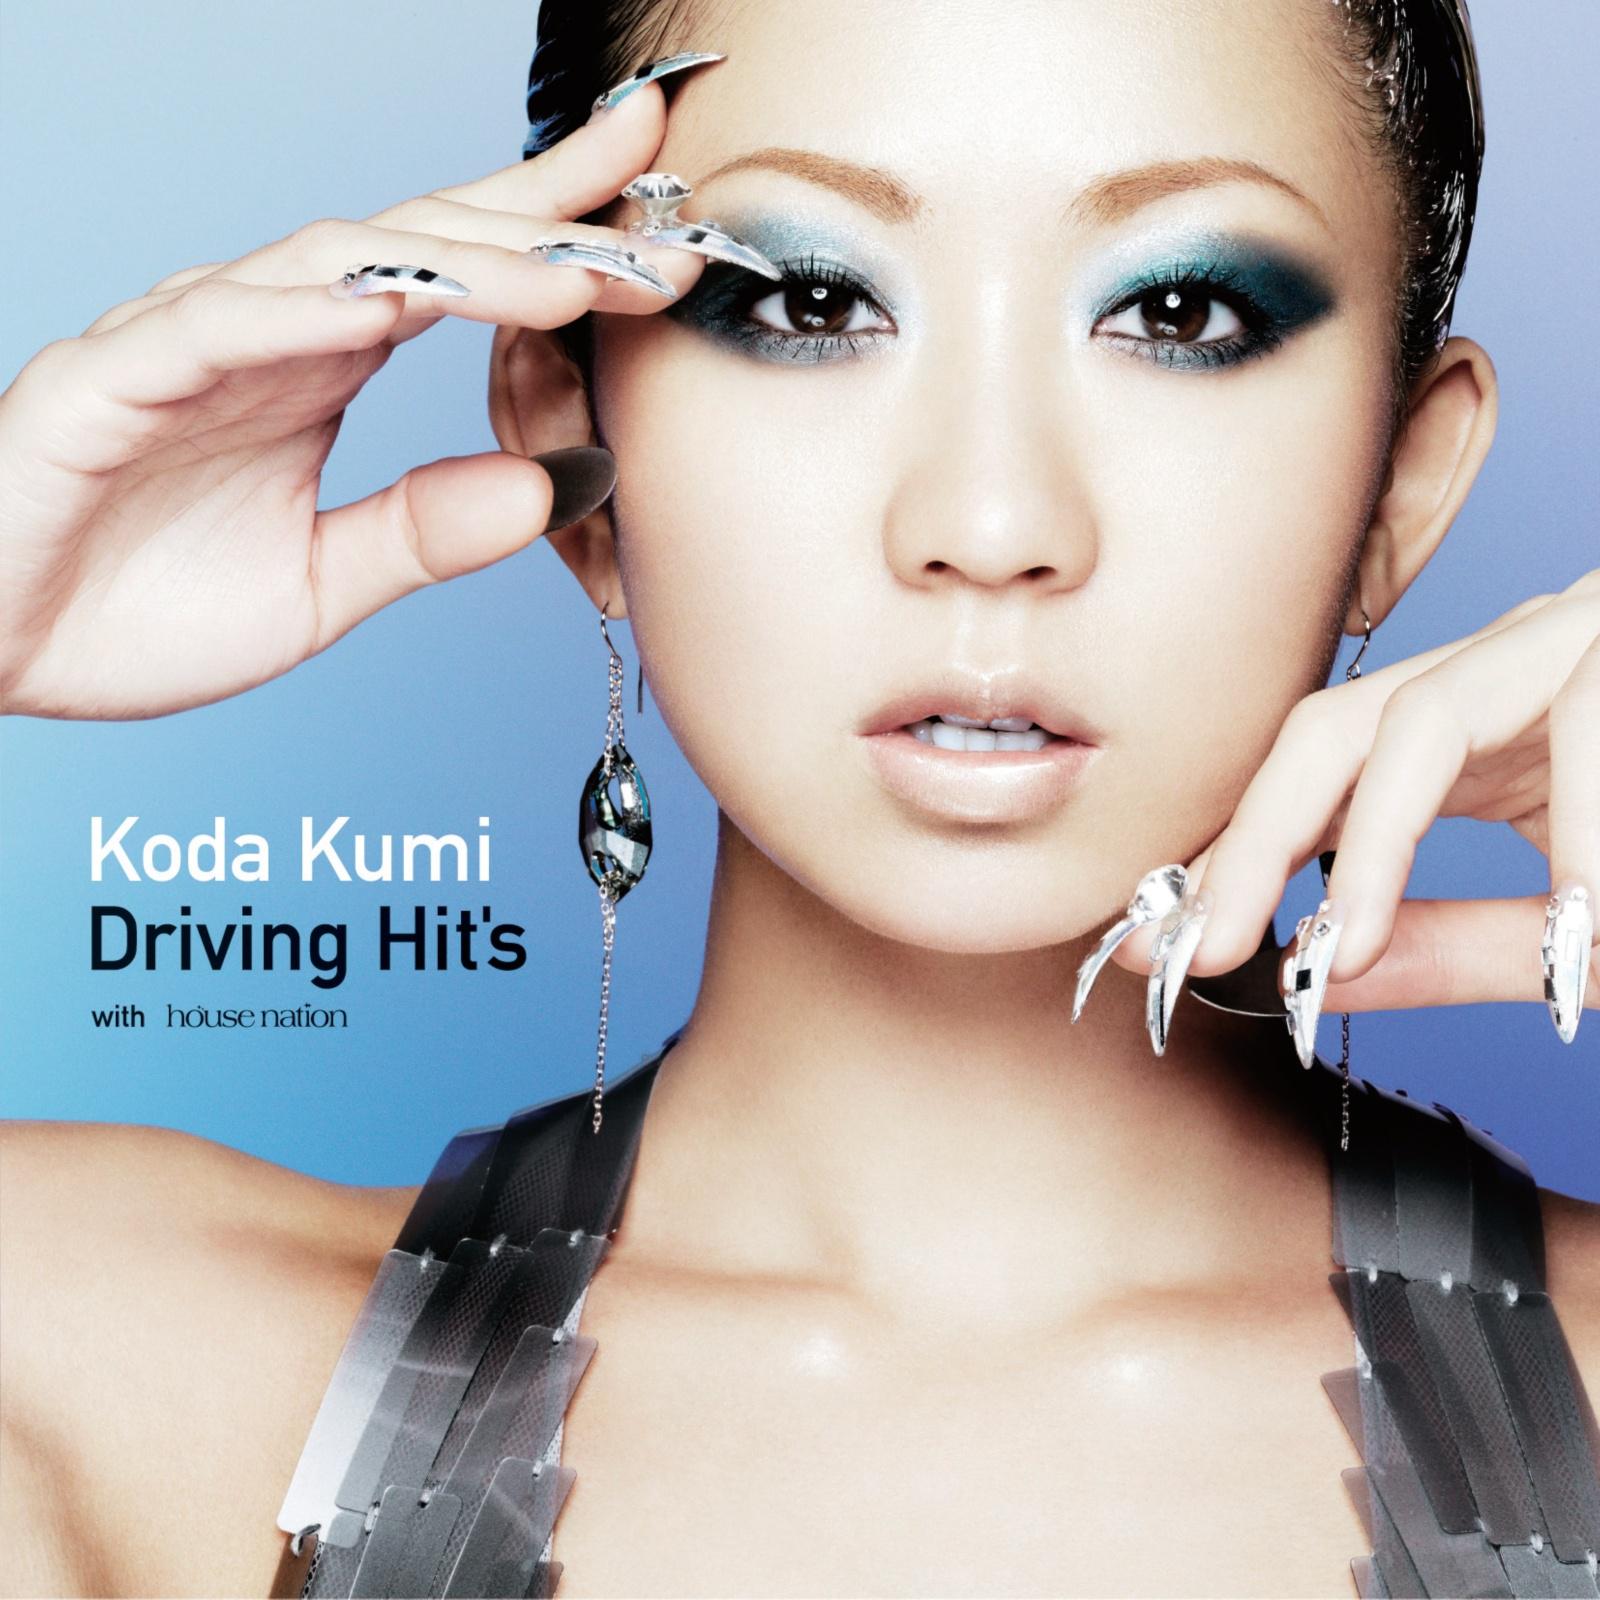 KODA KUMI DRIVING HIT'S专辑